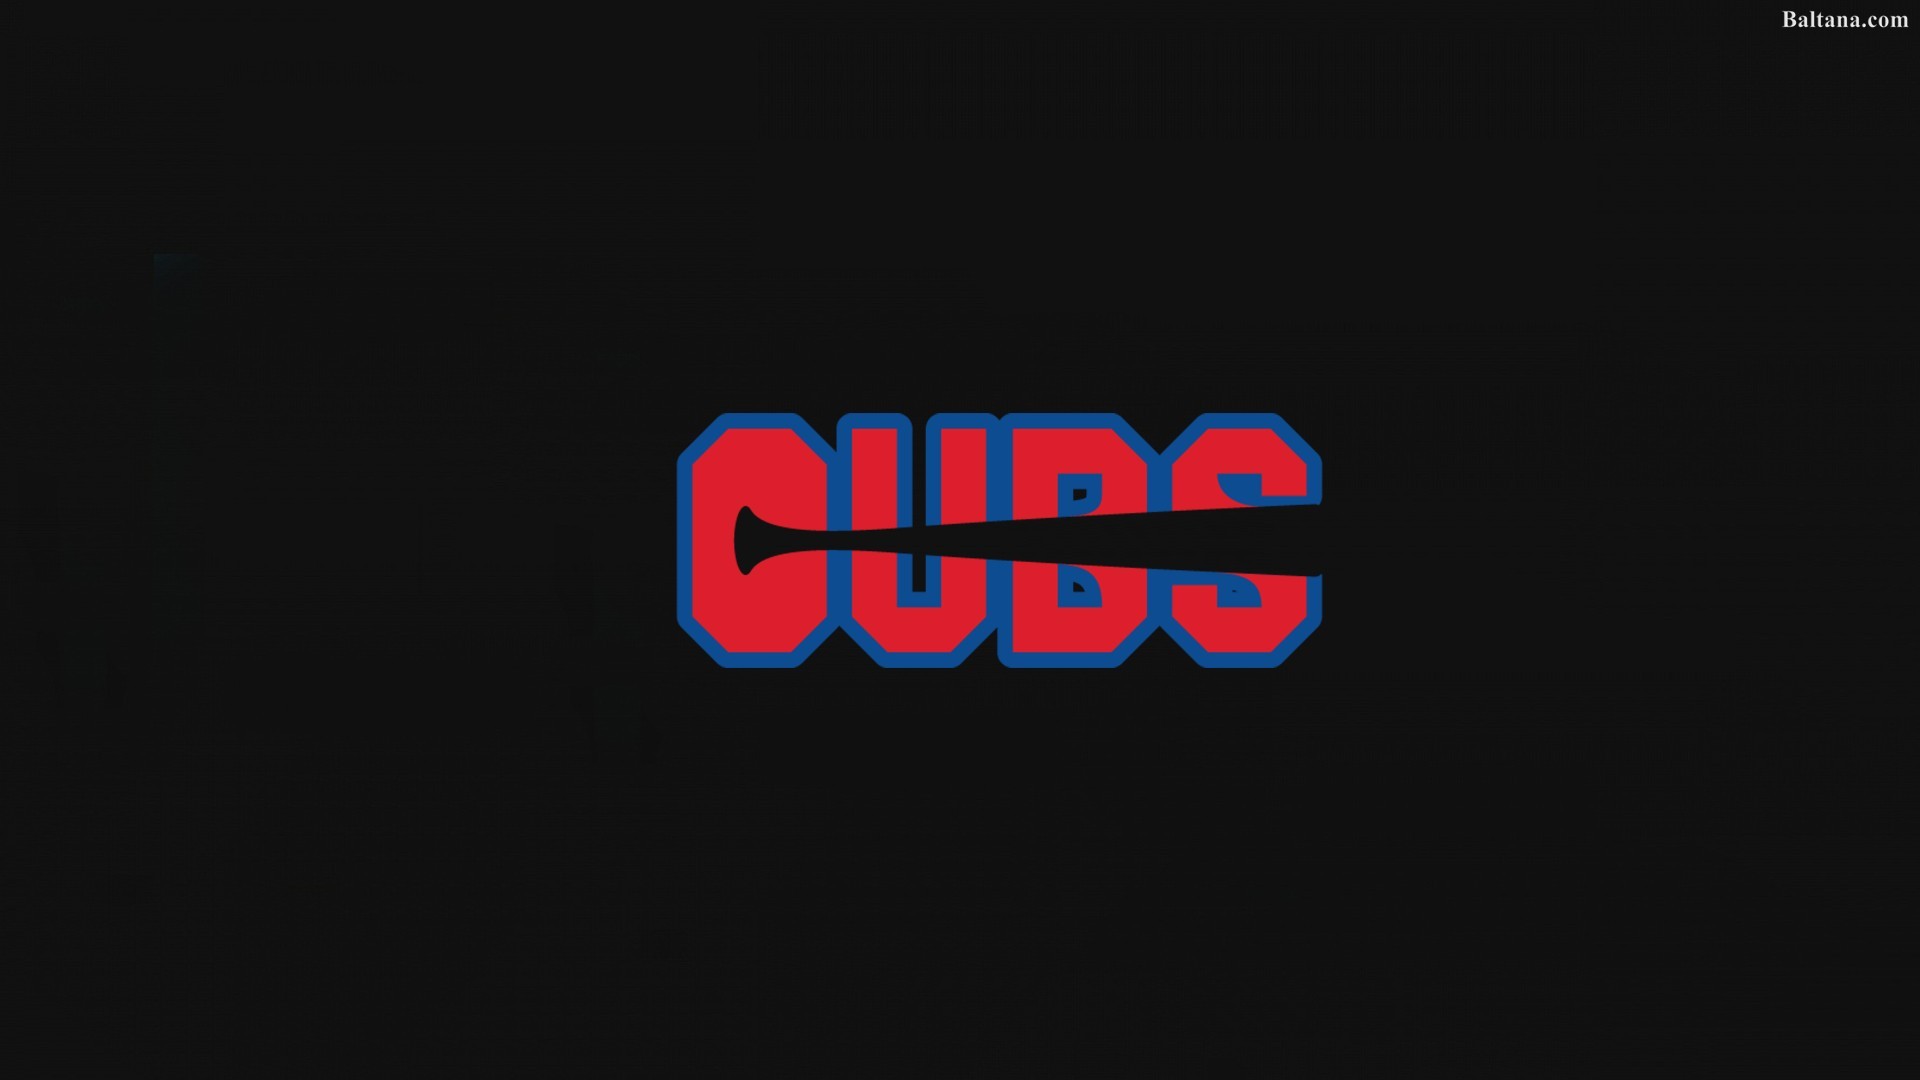 Chicago Cubs Desktop Wallpaper 599059 1920x1080